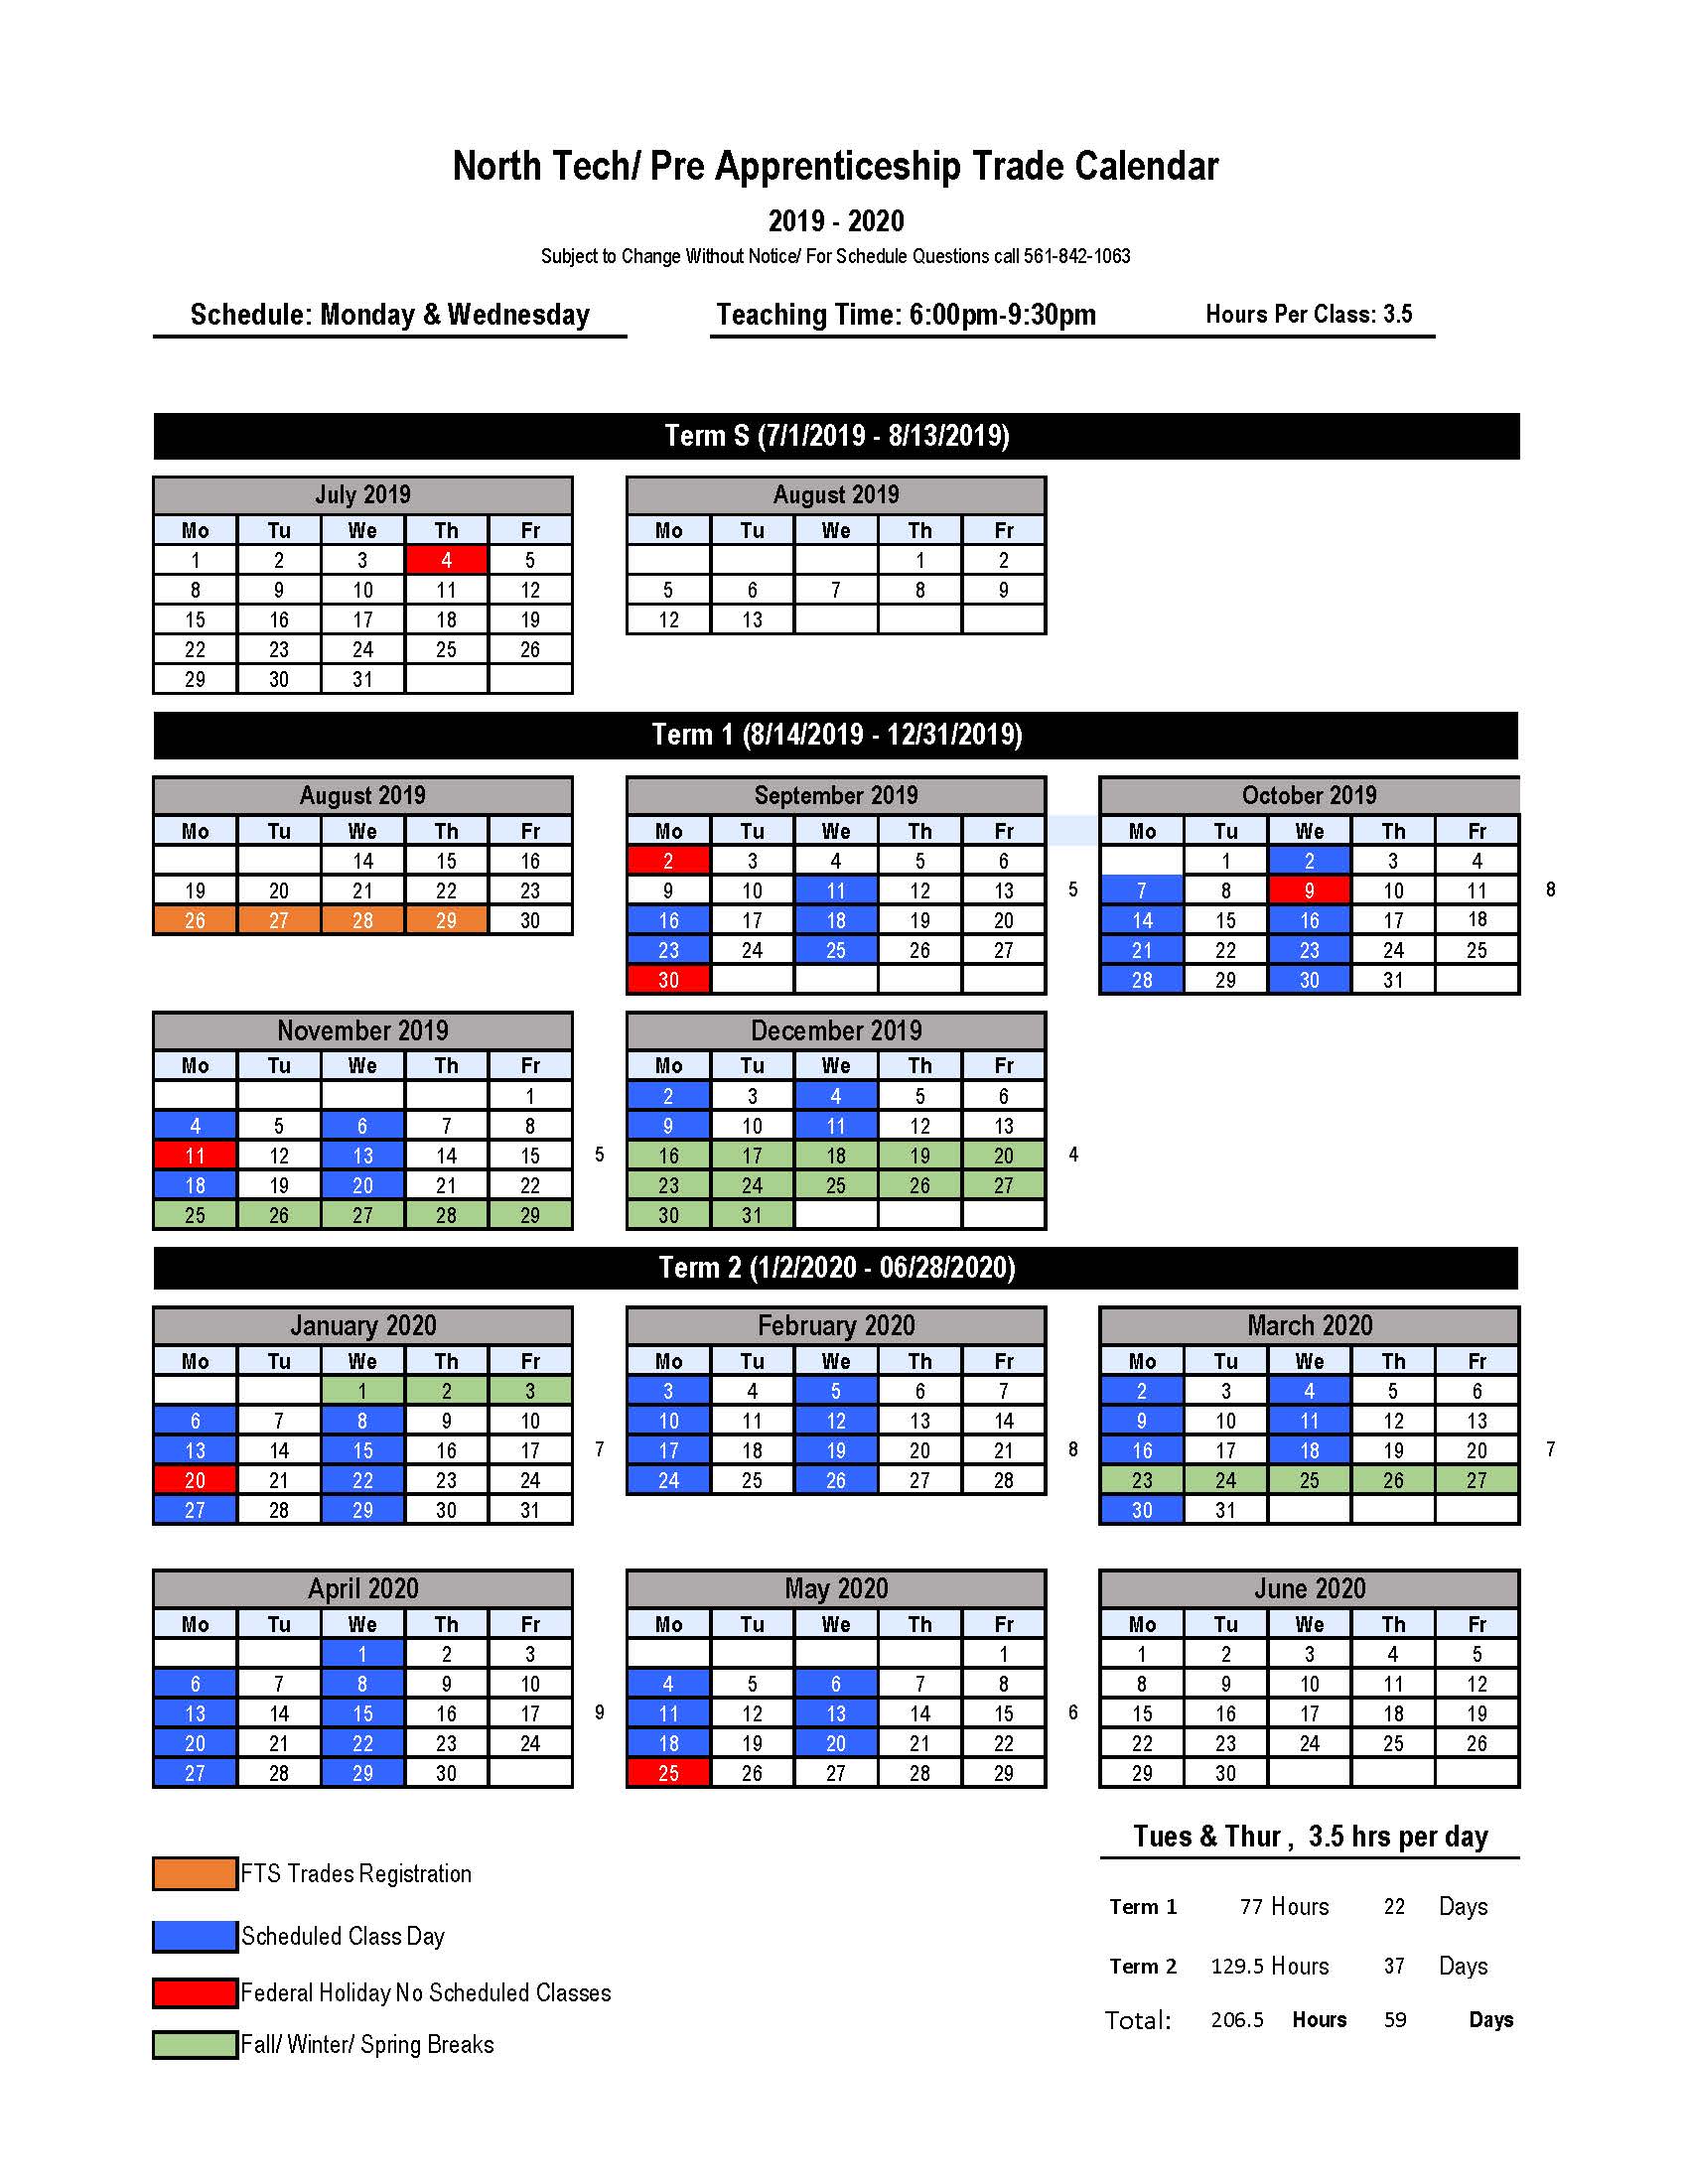 Updated 20192020 North Tech Calendar